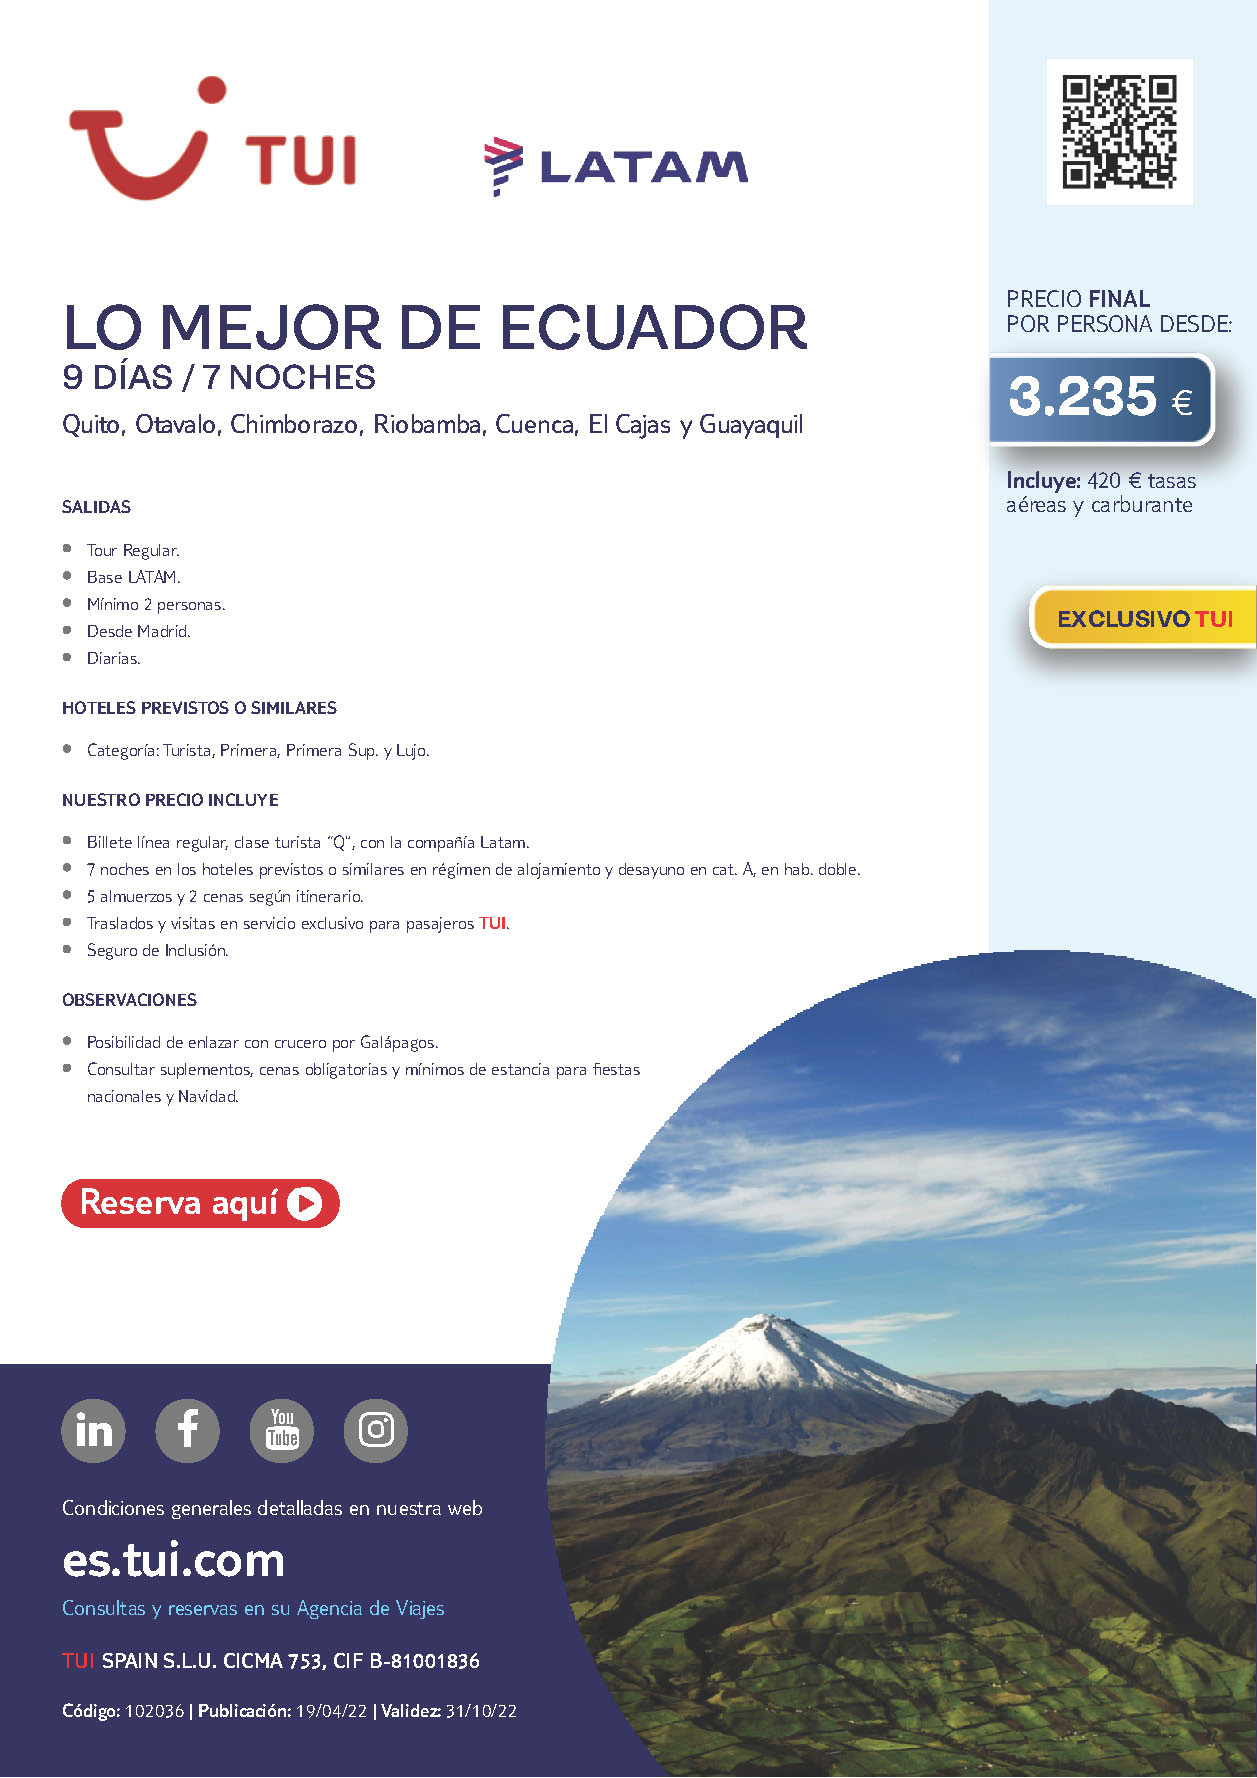 Oferta TUI Lo Mejor de Ecuador 9 dias salidas de Mayo a Octubre 2022 desde Madrid vuelos Latam